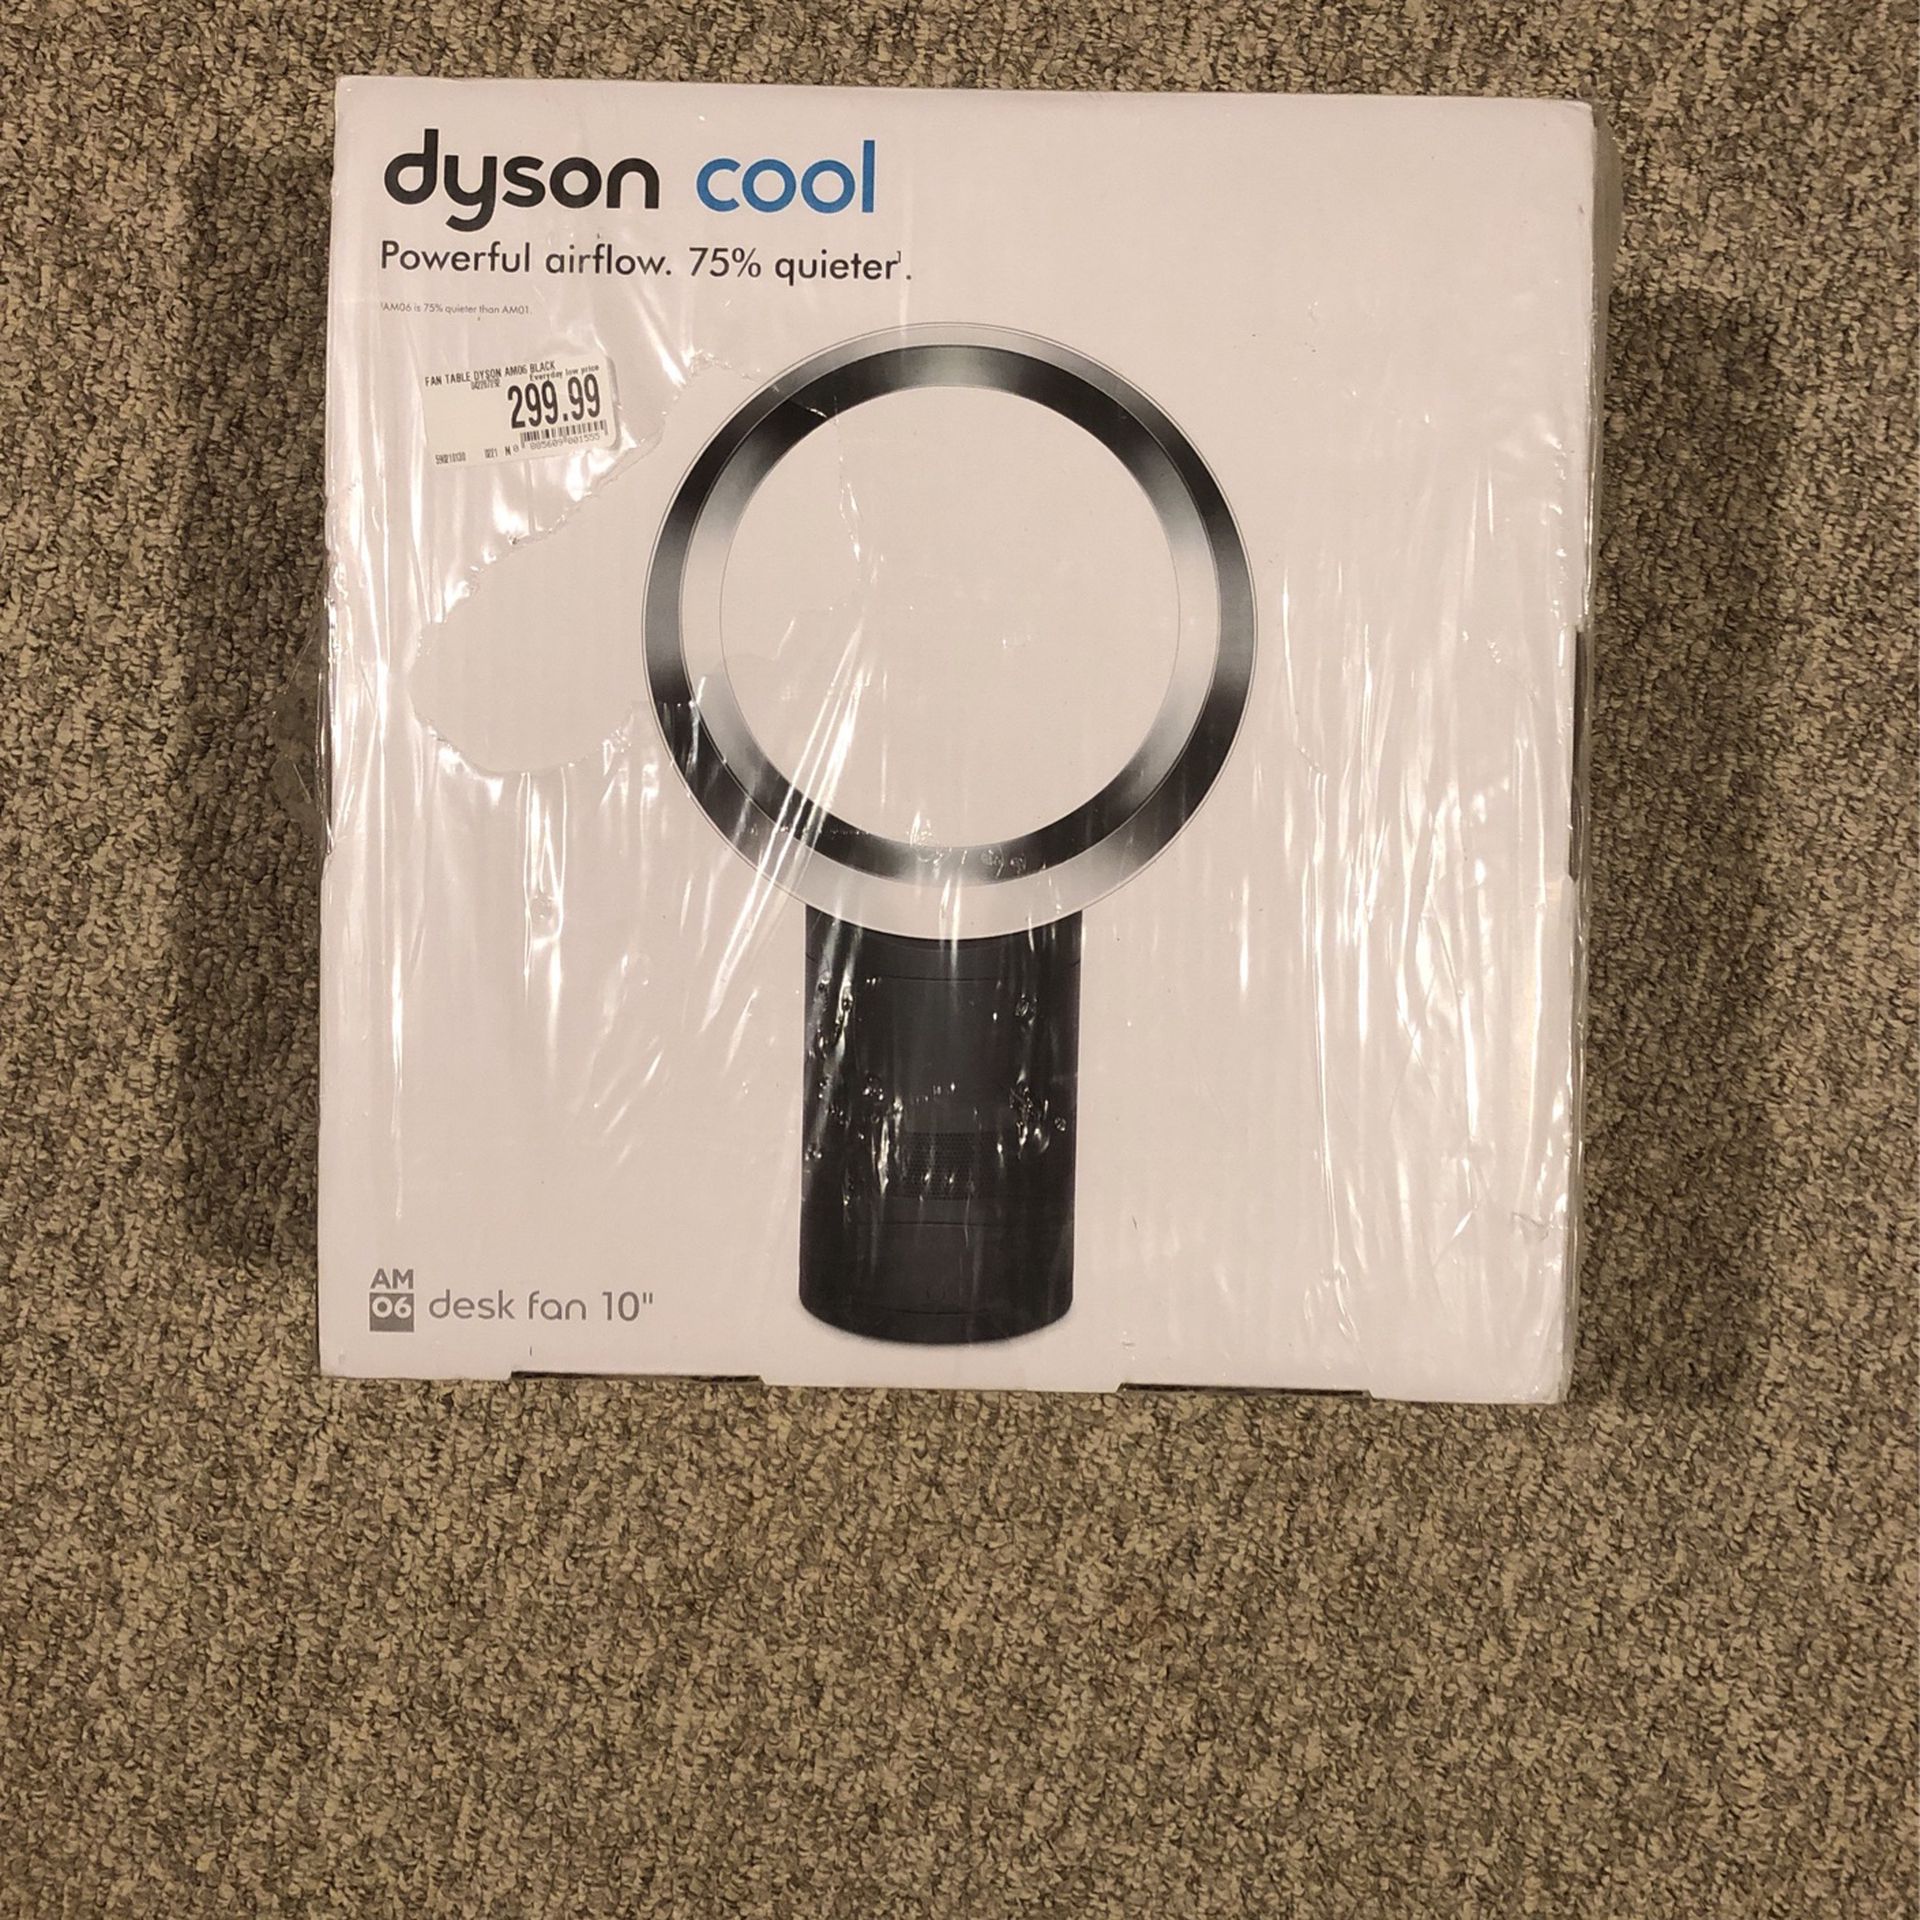 DYSON COOL 10 “ FAN BRAND NEW IN BOX